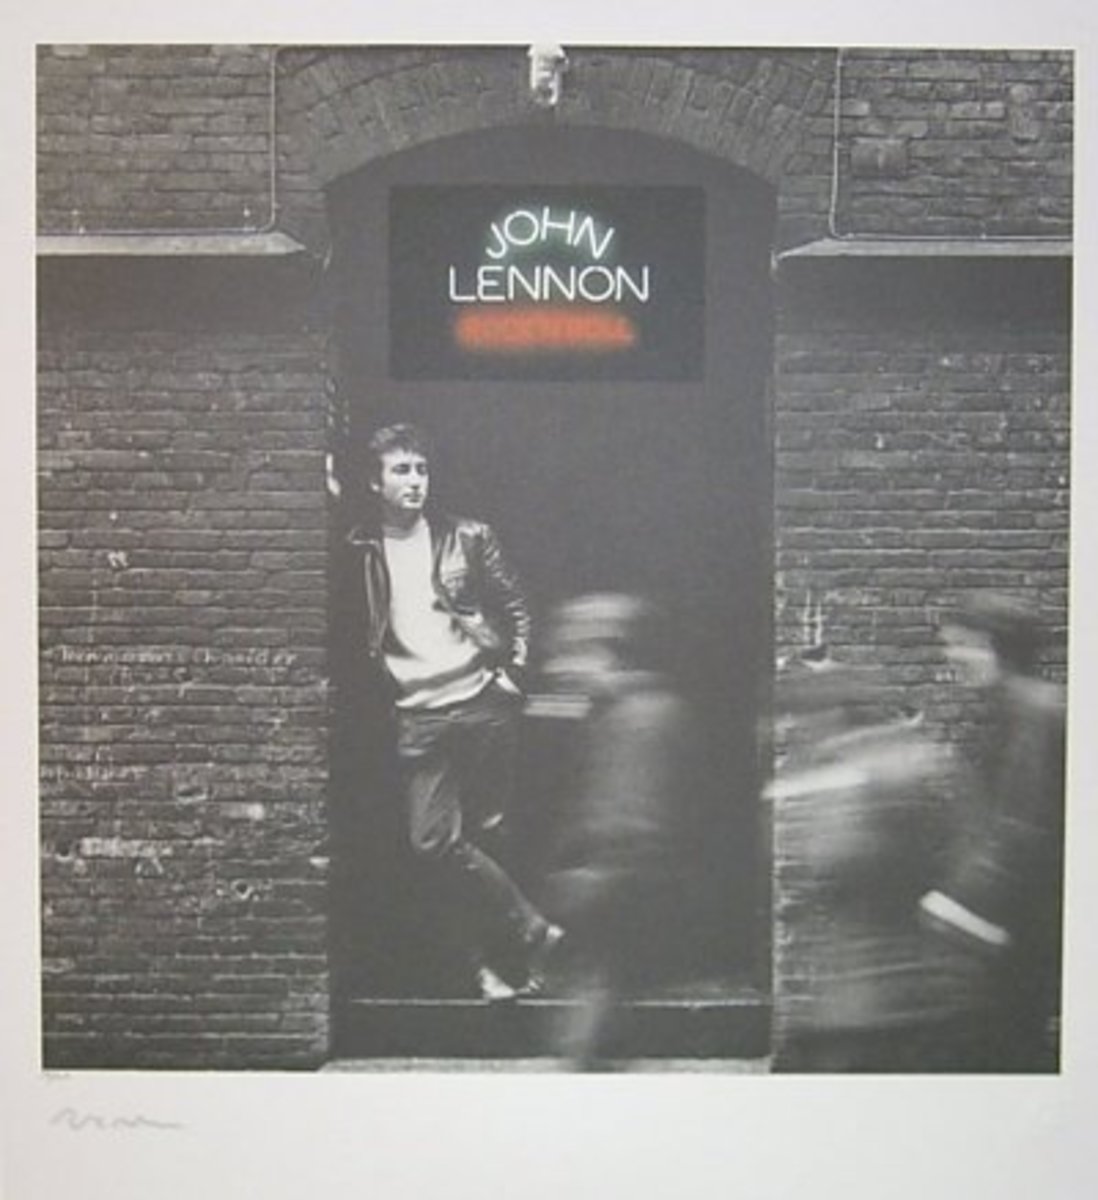 John Lennon "Rock N Roll" Limited Edition Fine Art Print by Jürgen Vollmer - Signed by Yoko Ono